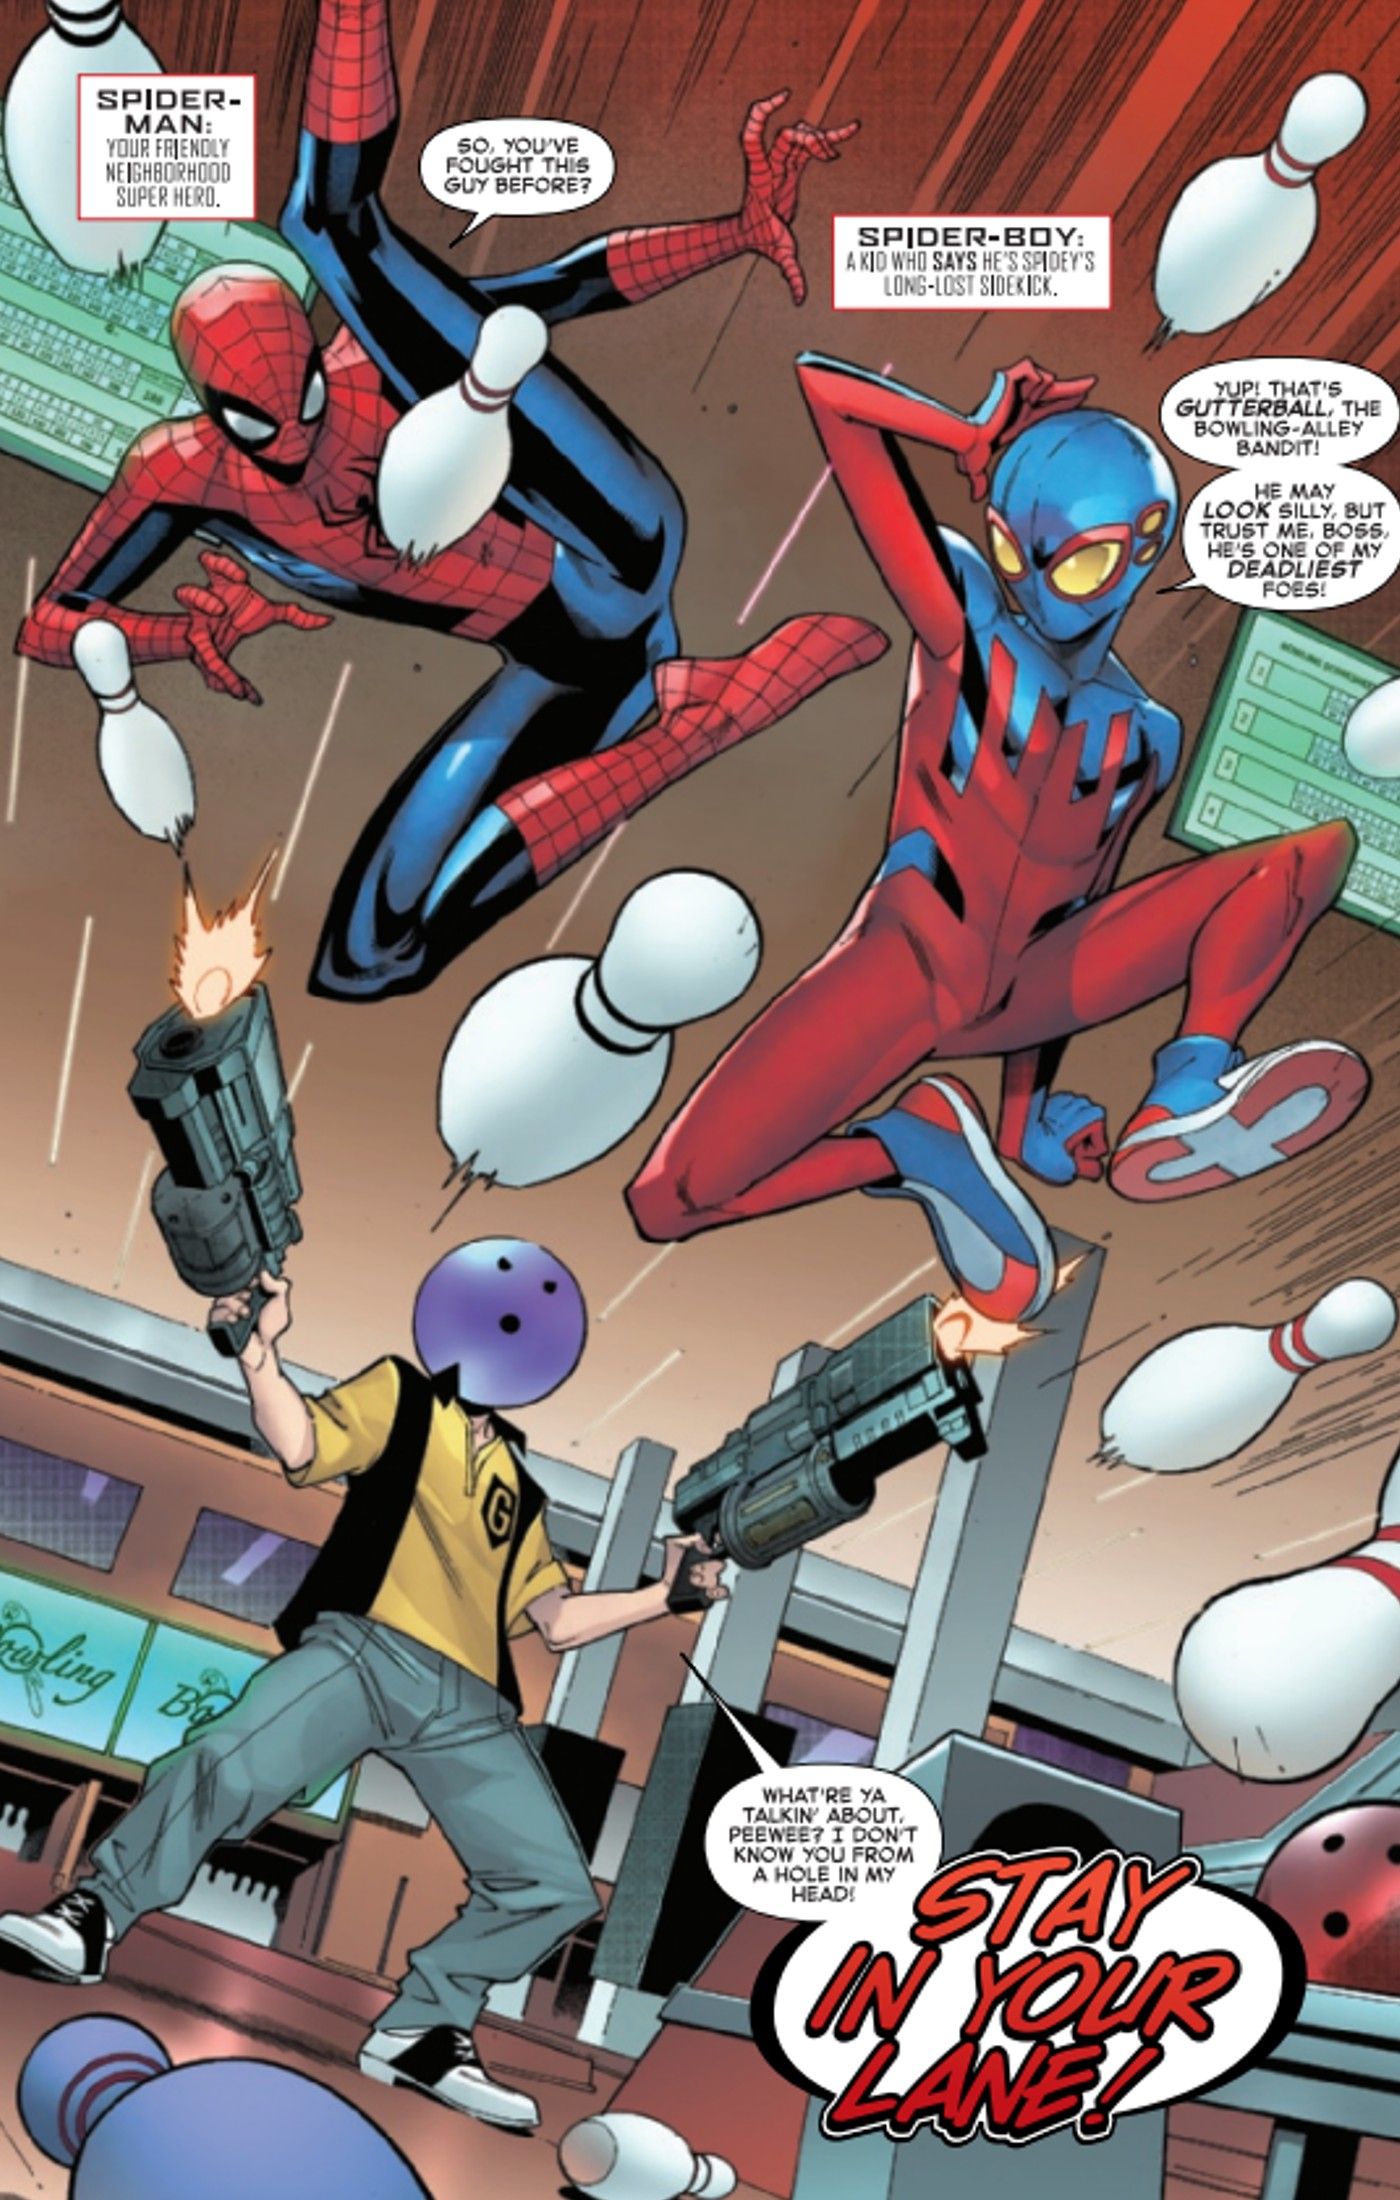 Gutterball, mysterious villain from Spider-Boy #1